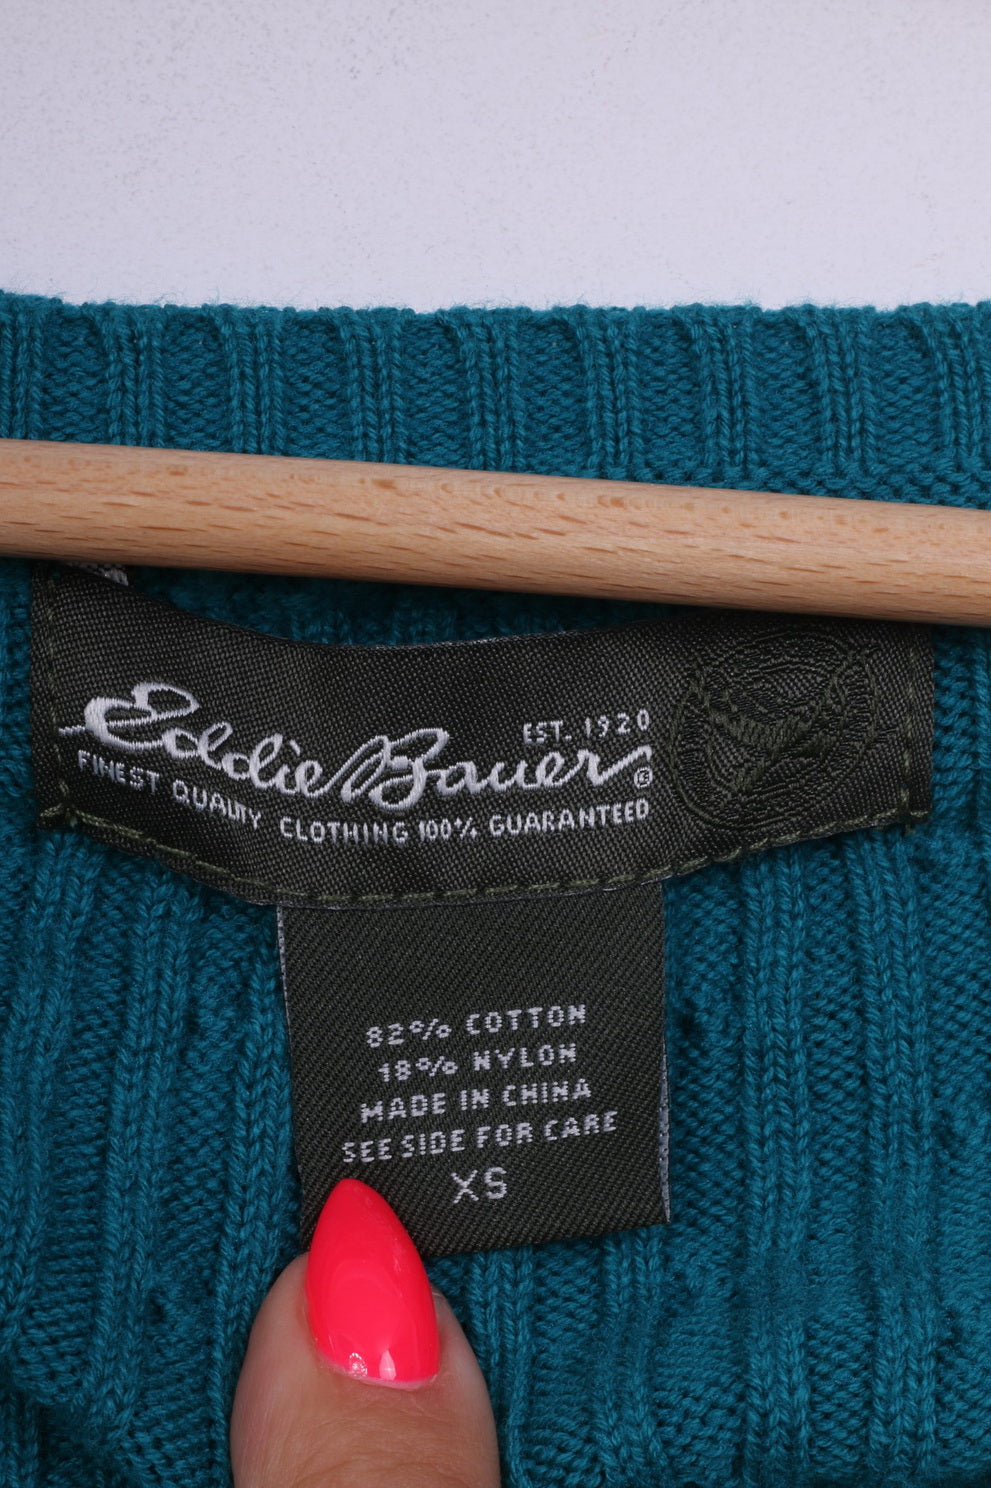 Eddie Bauer Womens XS Jumper Round Neck Sweater Turquoise Short Sleeve Cotton Nylon Knit